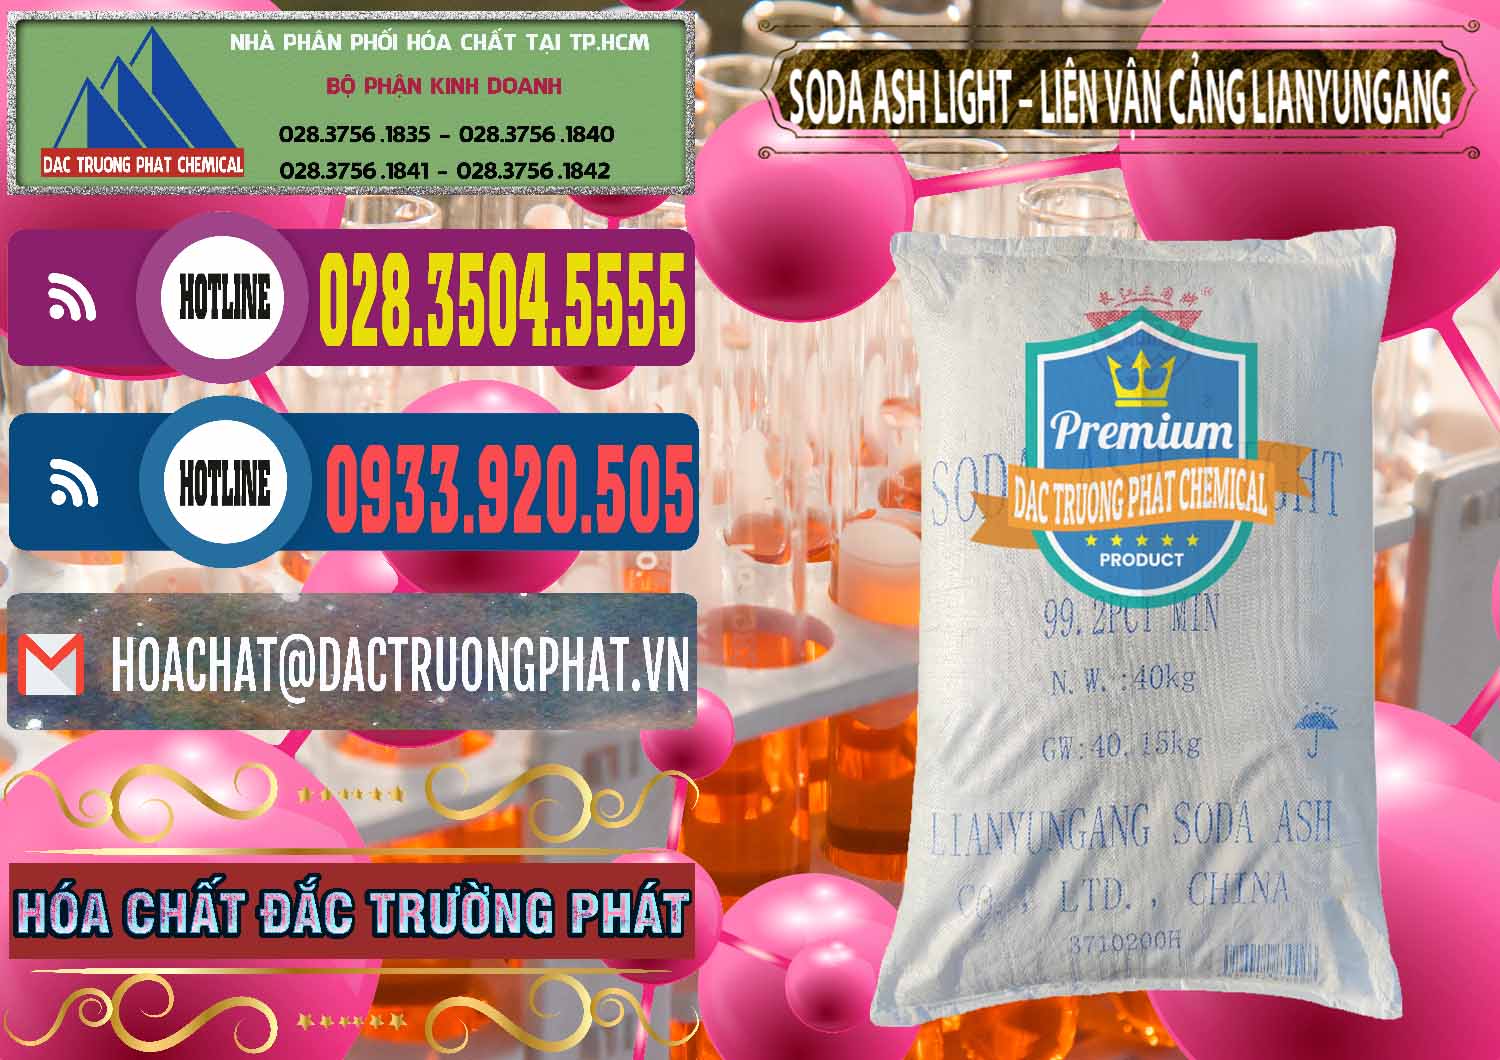 Cty bán & phân phối Soda Ash Light - NA2CO3 Liên Vậng Cảng Lianyungang Trung Quốc China - 0197 - Kinh doanh ( phân phối ) hóa chất tại TP.HCM - muabanhoachat.com.vn